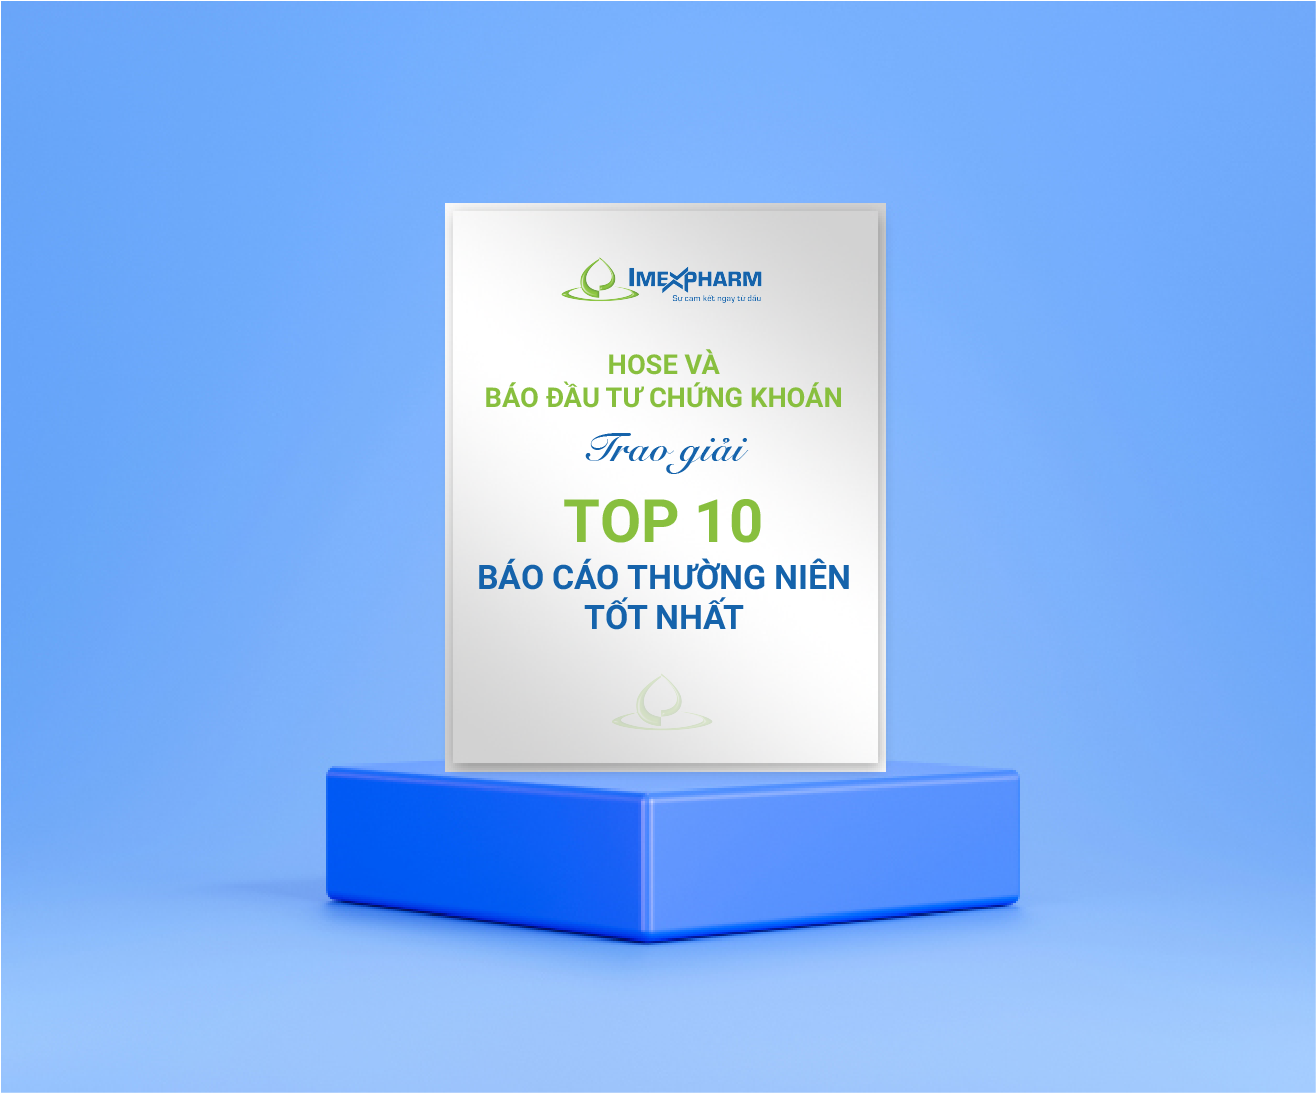 HOSE và Báo Đầu tư chứng khoán trao giải Top 10 Báo cáo thường niên tốt nhất.